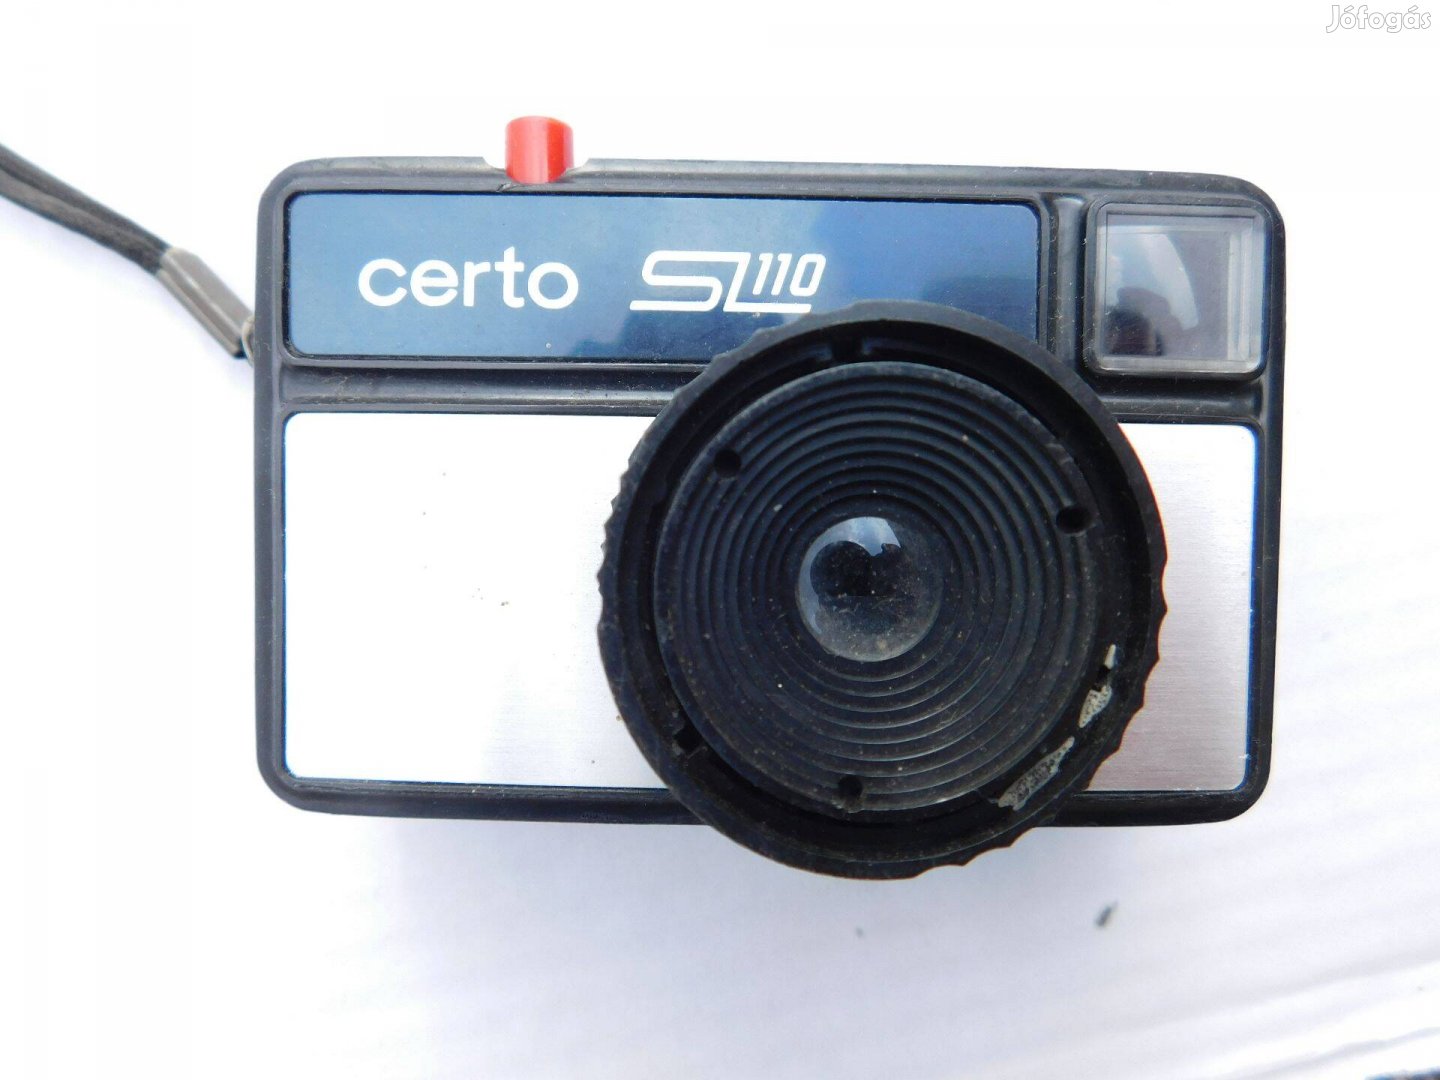 Certo SL110 filmes fényképezőgép